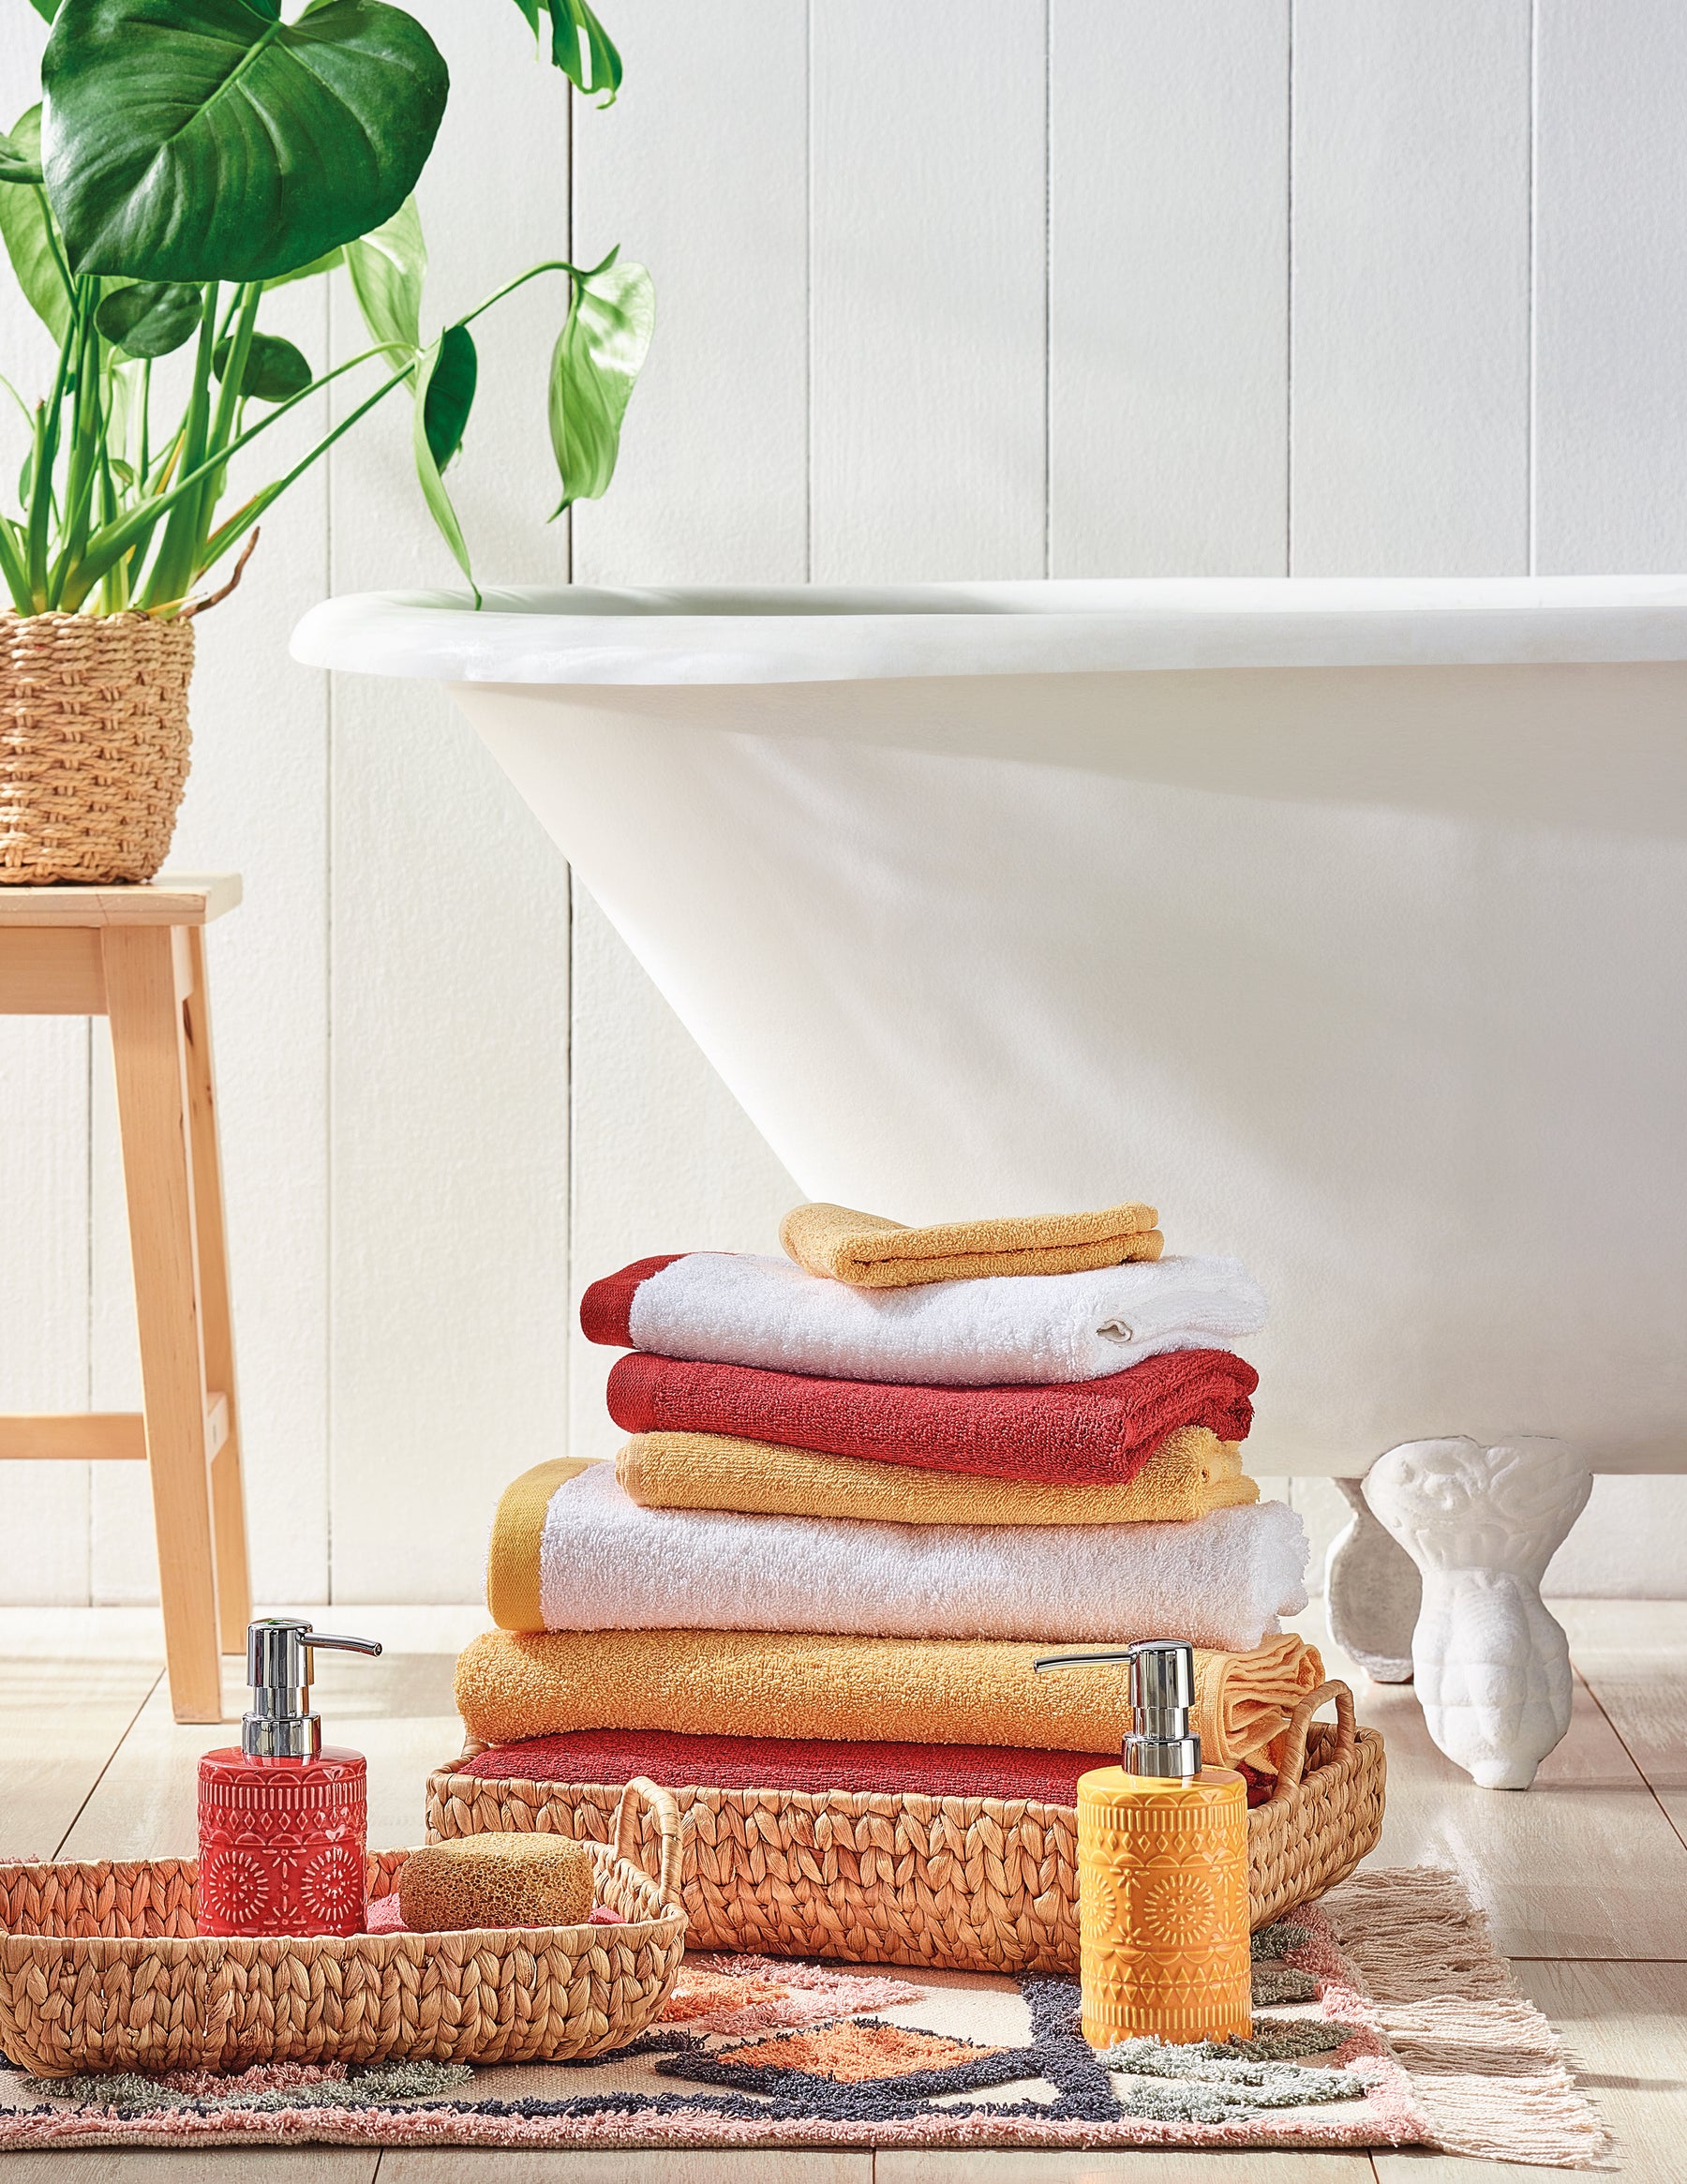 Casa de Banho, com toalhas vermelhas, amarelas, cestos de decoração, saboneteiras e banheiras.